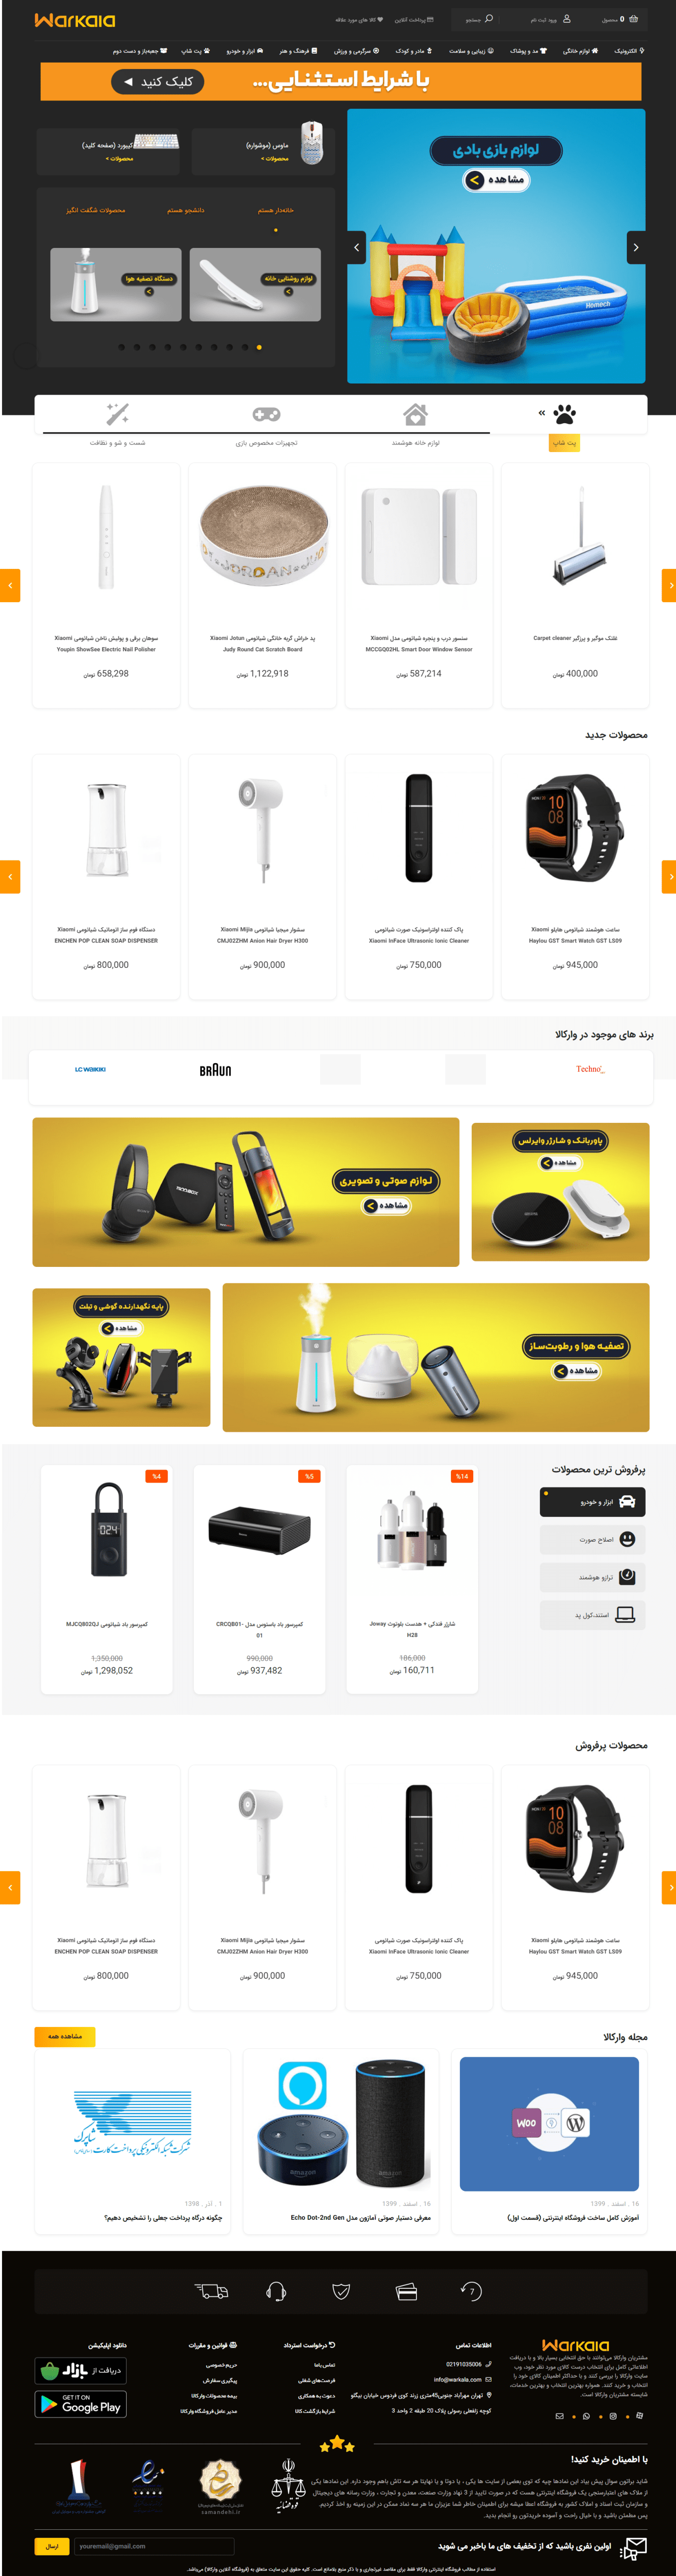 طراحی فروشگاه اینترنتی وارکالا | Warkala online store